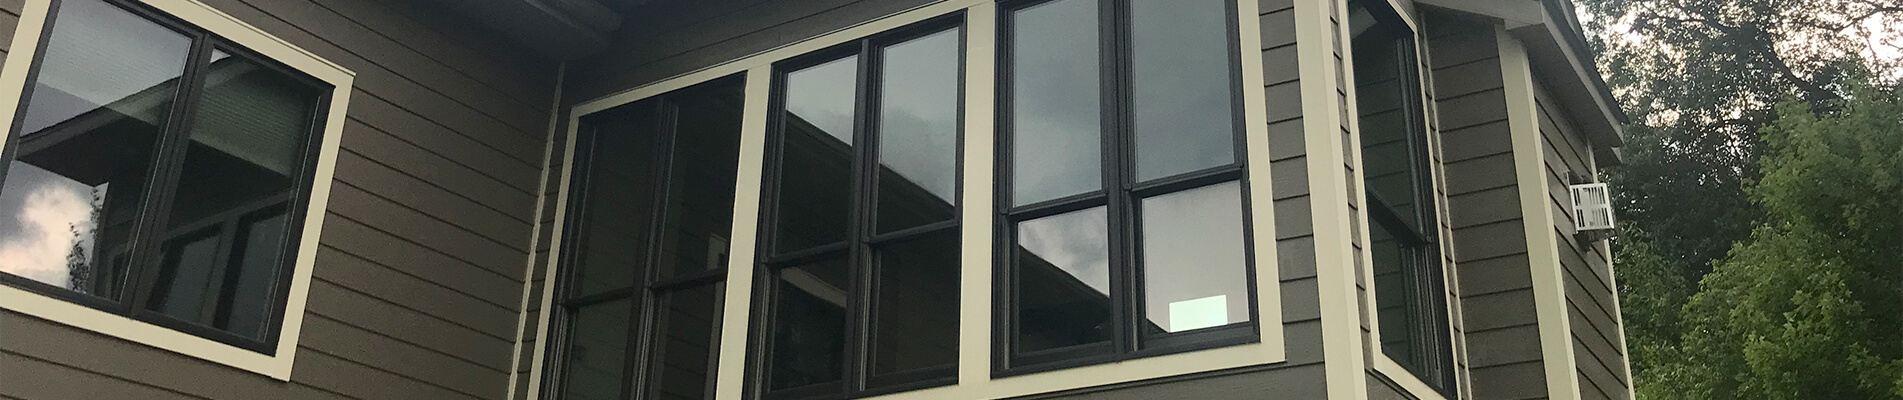 residential-commercial-windows.jpg